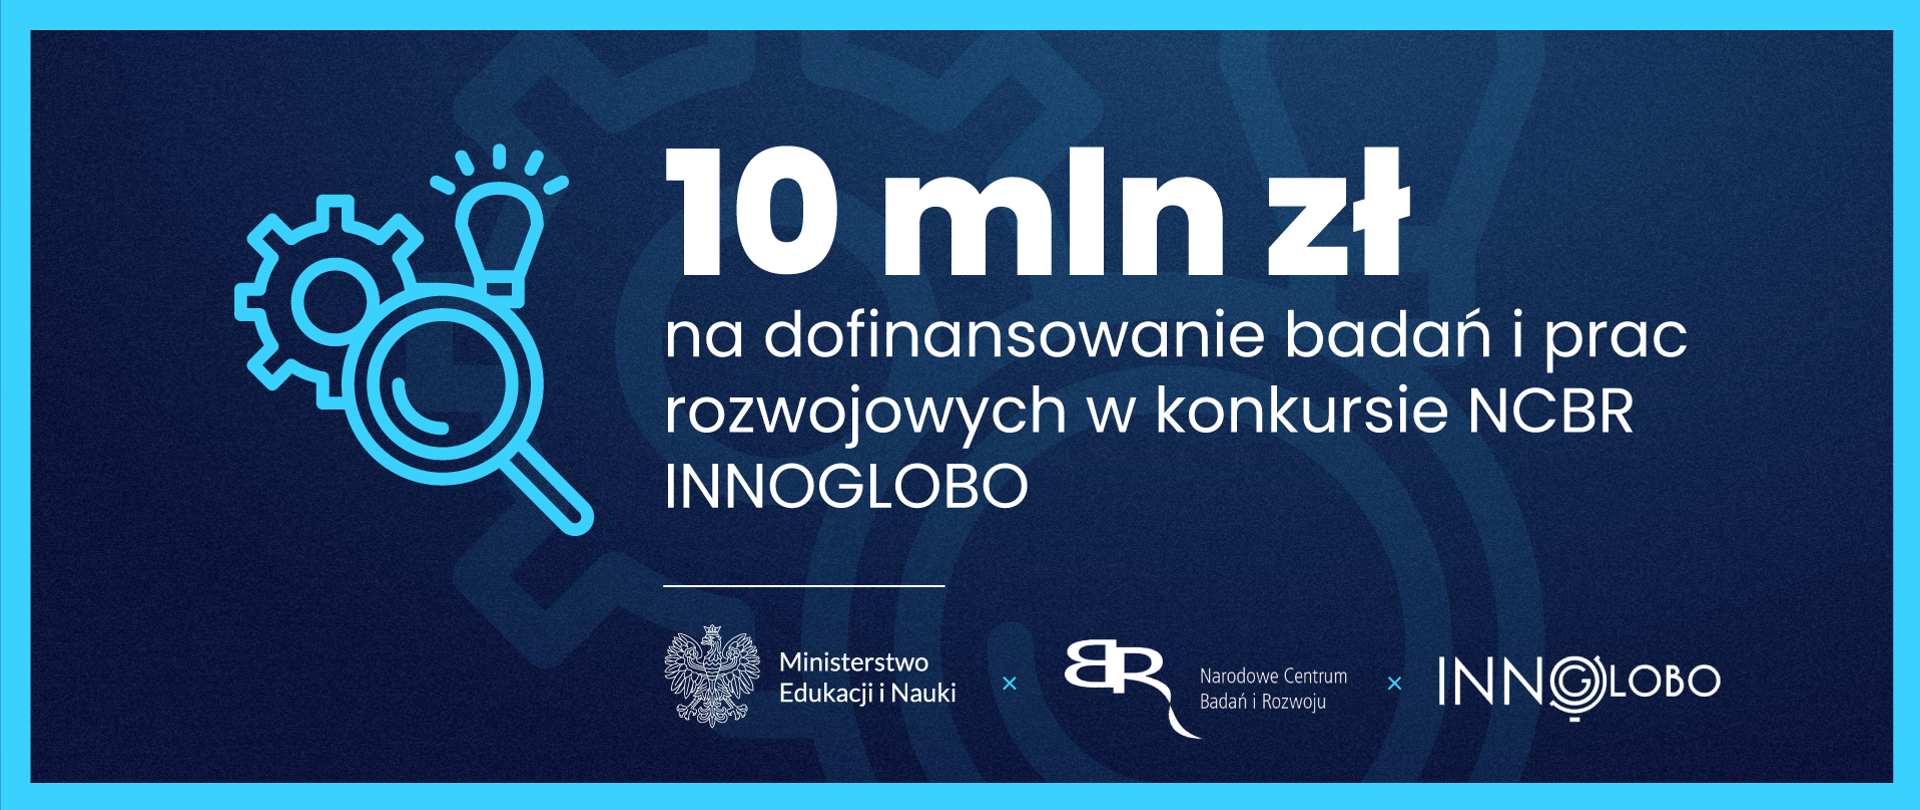 Grafika - na niebieskim tle stylizowana lupa, żarówka, koło zębate i napis 10 mln zł na dofinansowanie badań i prac rozwojowych w konkursie NCBR INNOGLOBO.